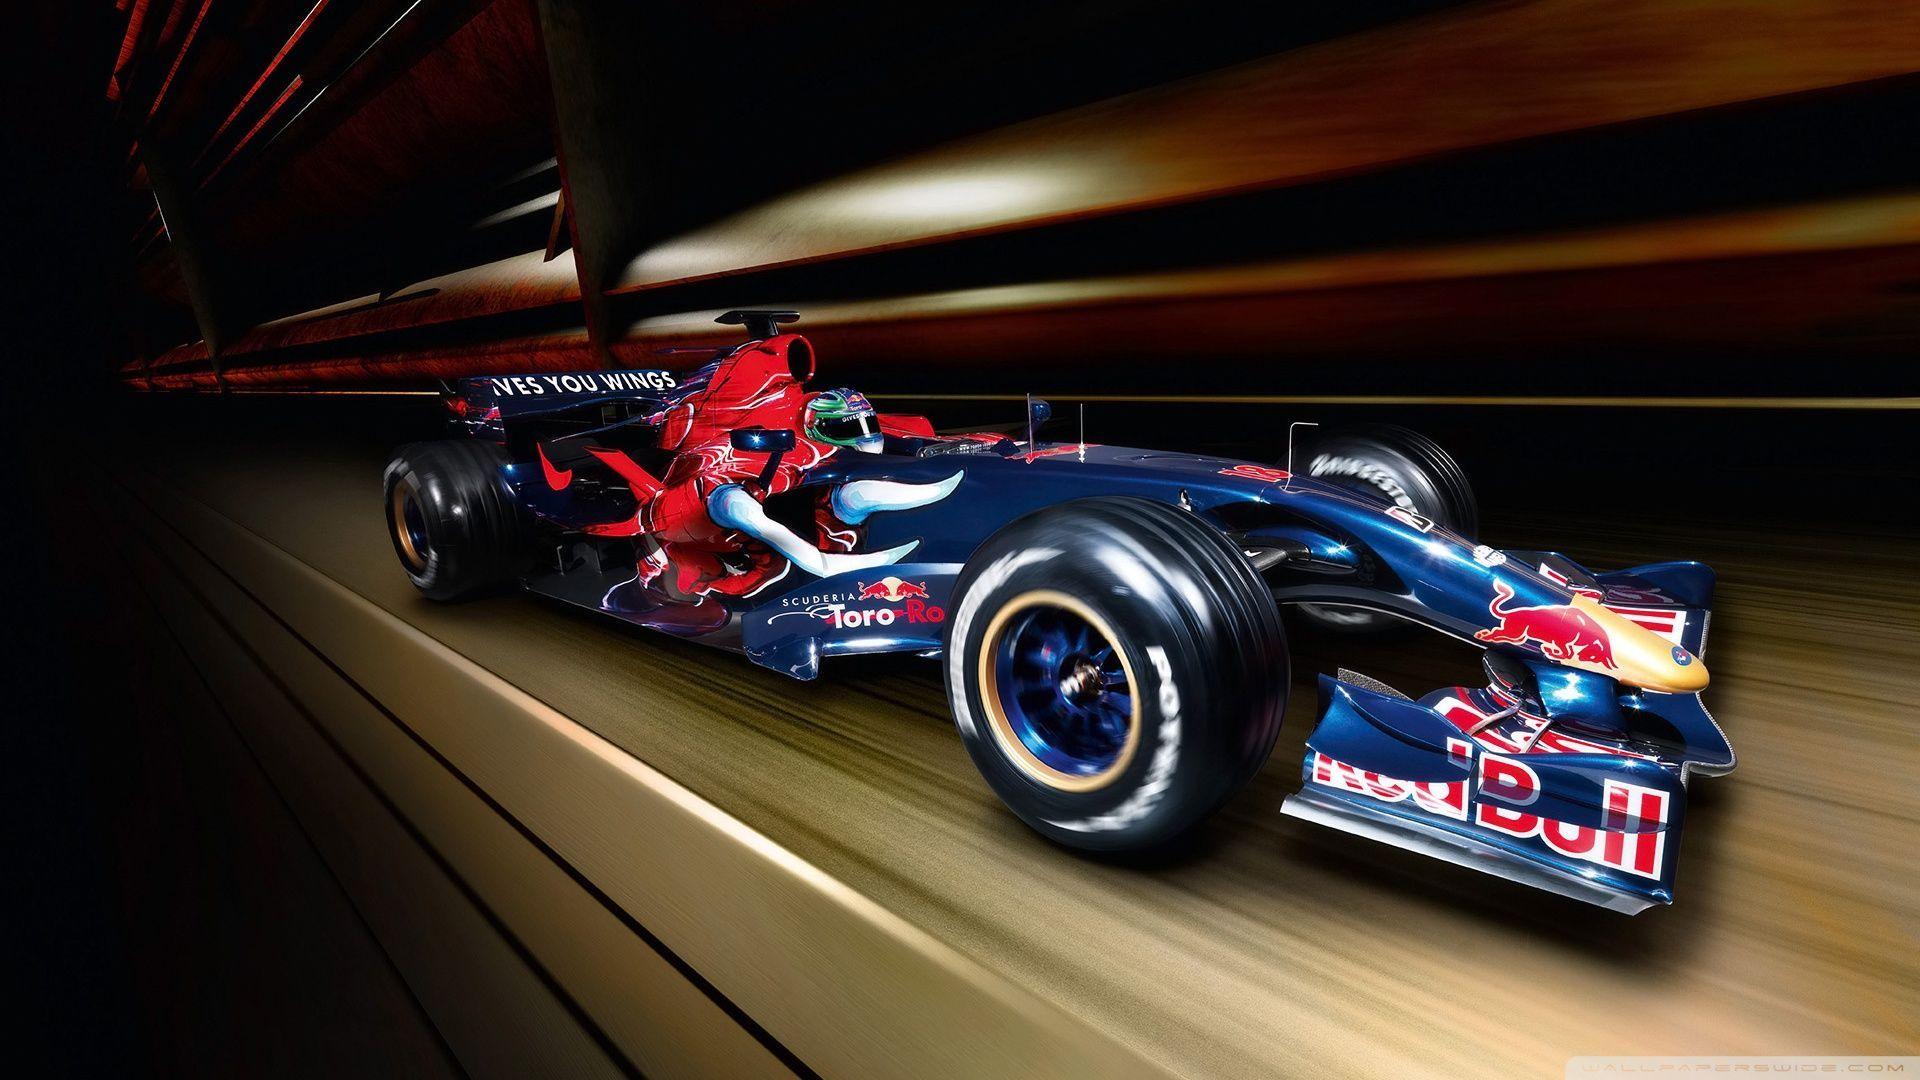 F1 &; HD Formula 1 Wallpaper